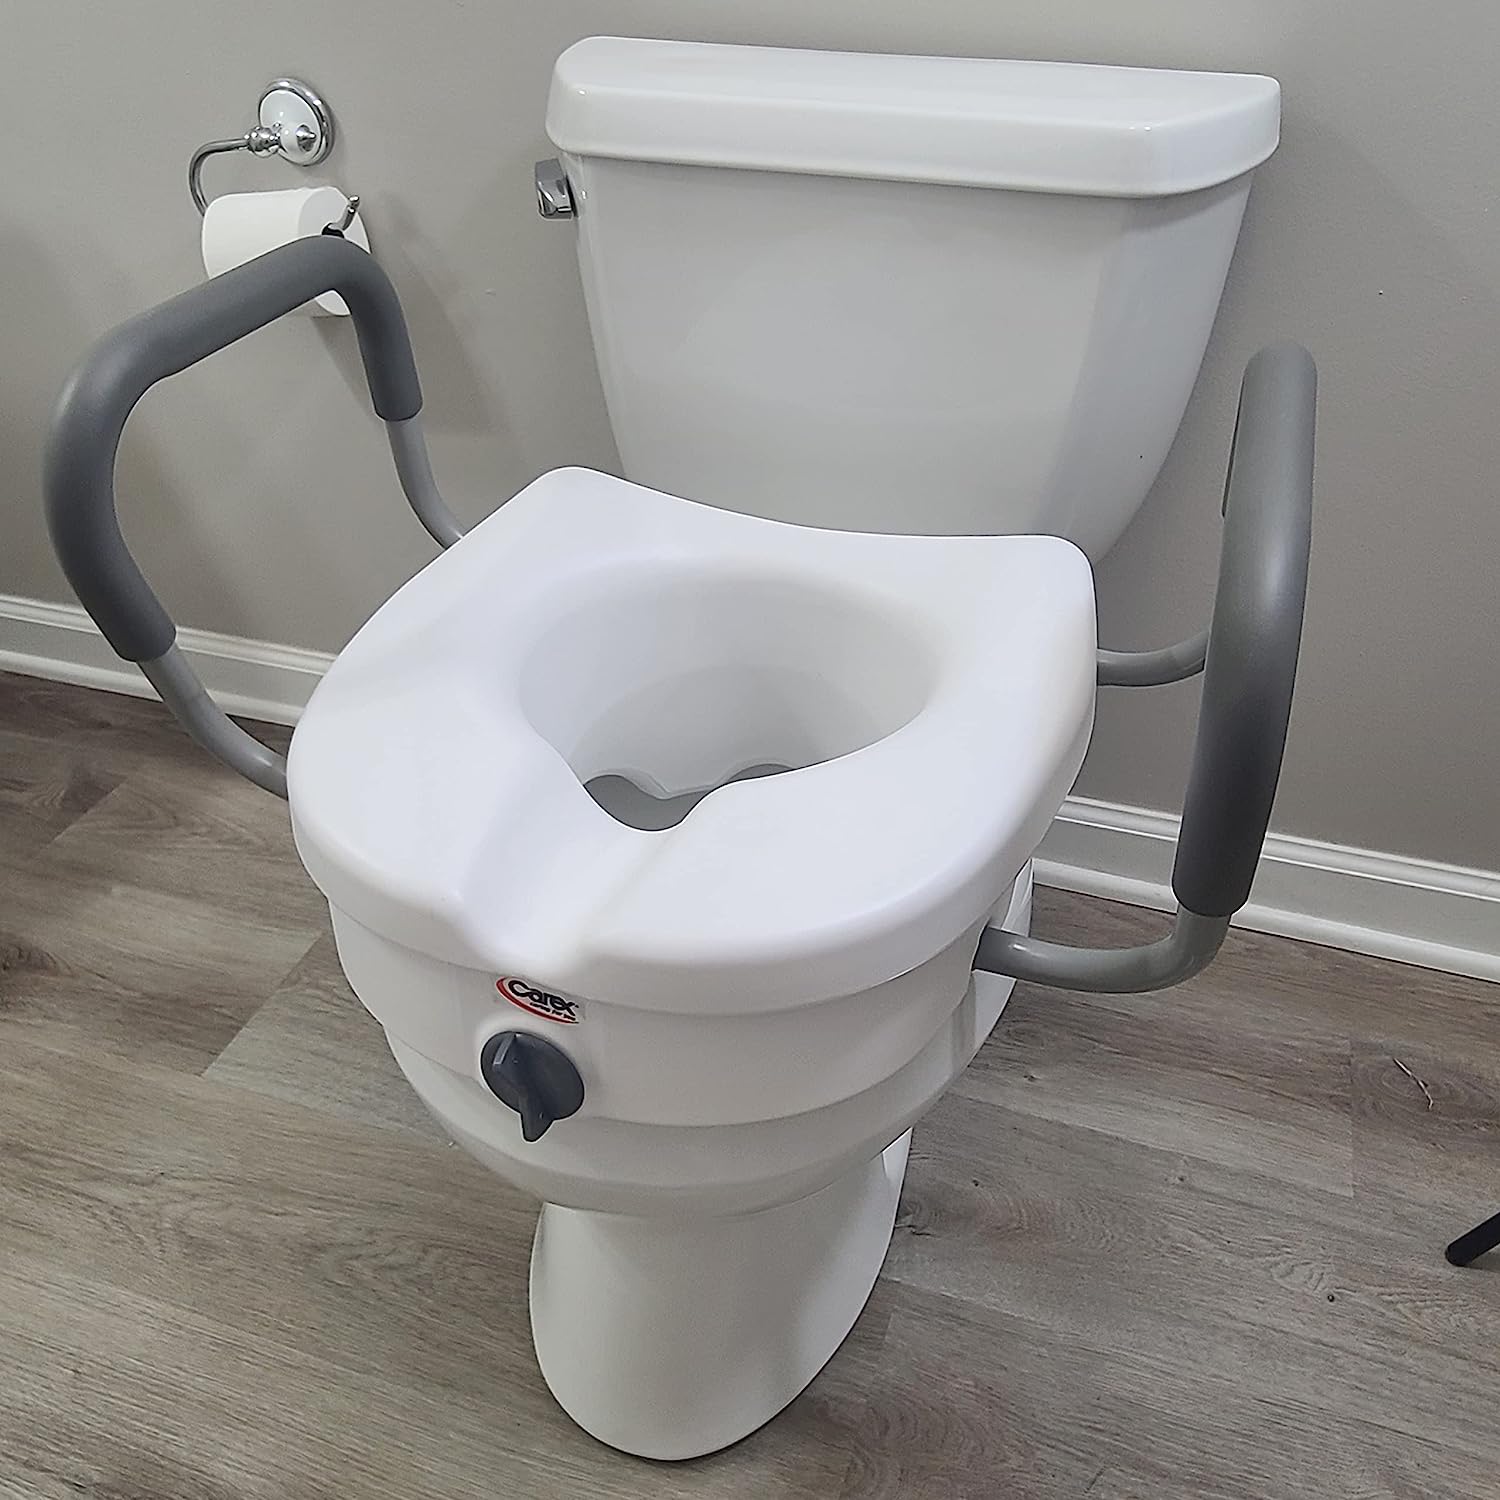 Carex E-z Lock Raised Toilet Seat - White : Target